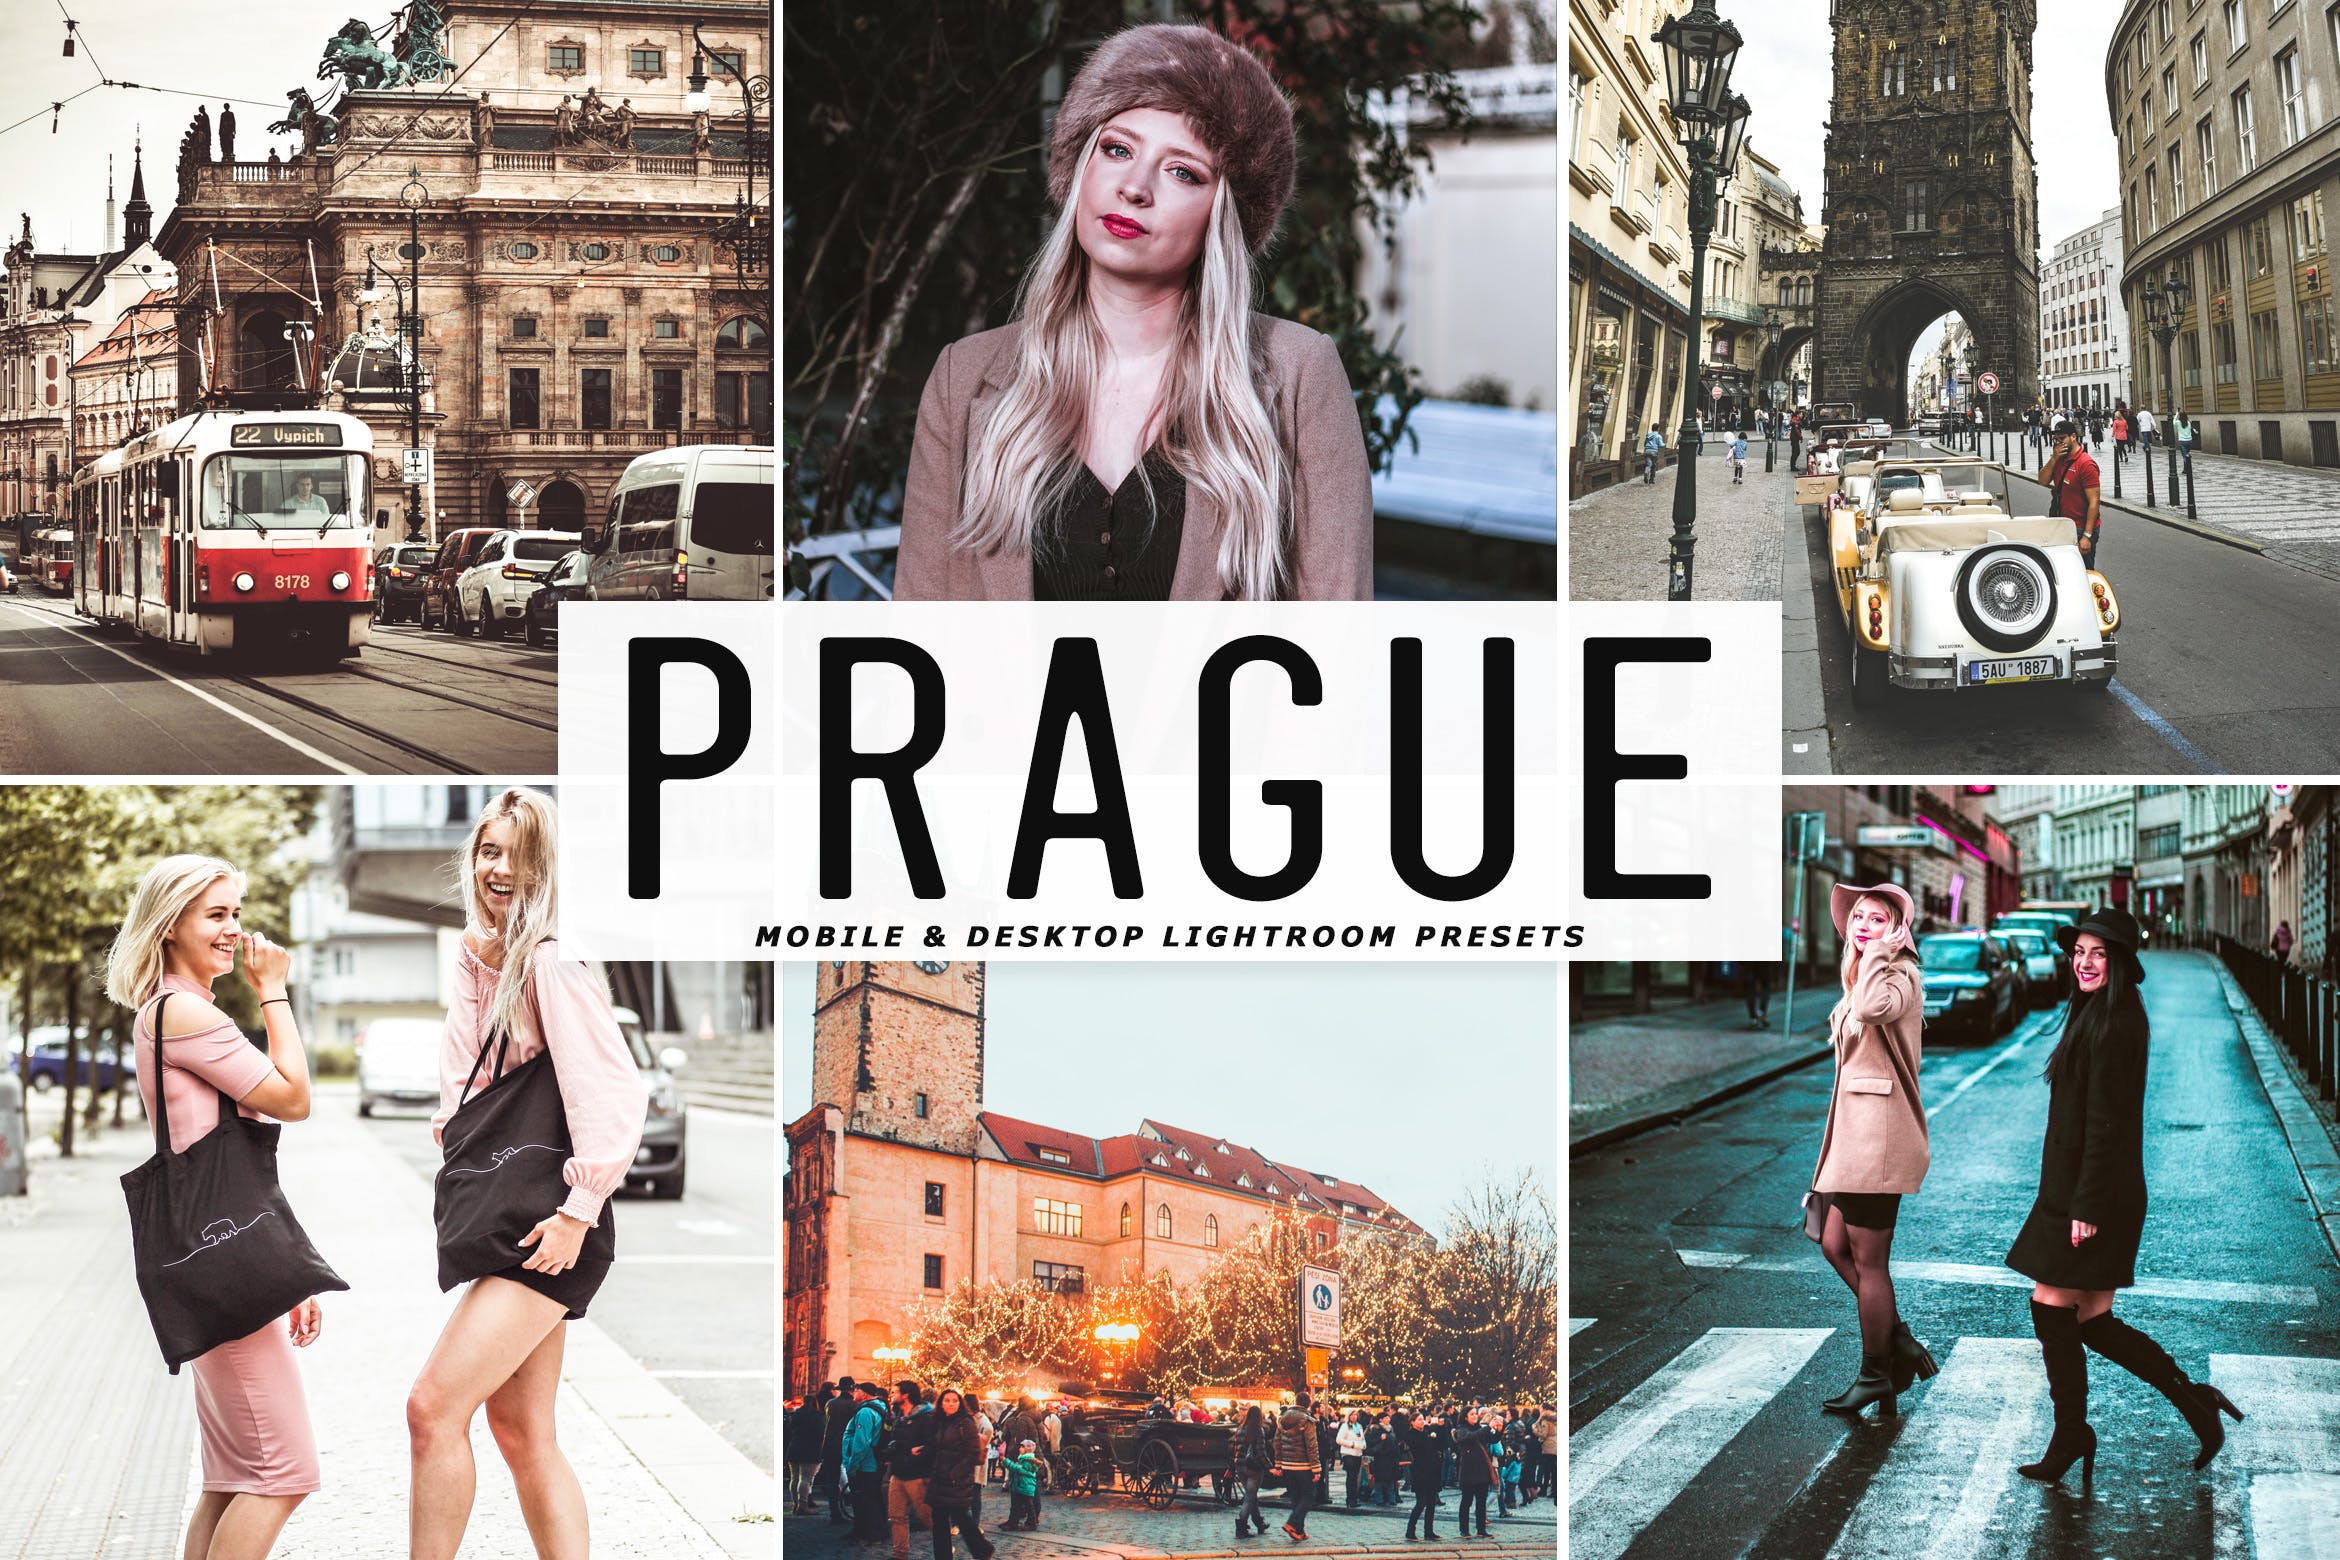 绿松石蓝&白色鲜艳色彩LR照片调色预设 Prague Mobile & Desktop Lightroom Presets插图